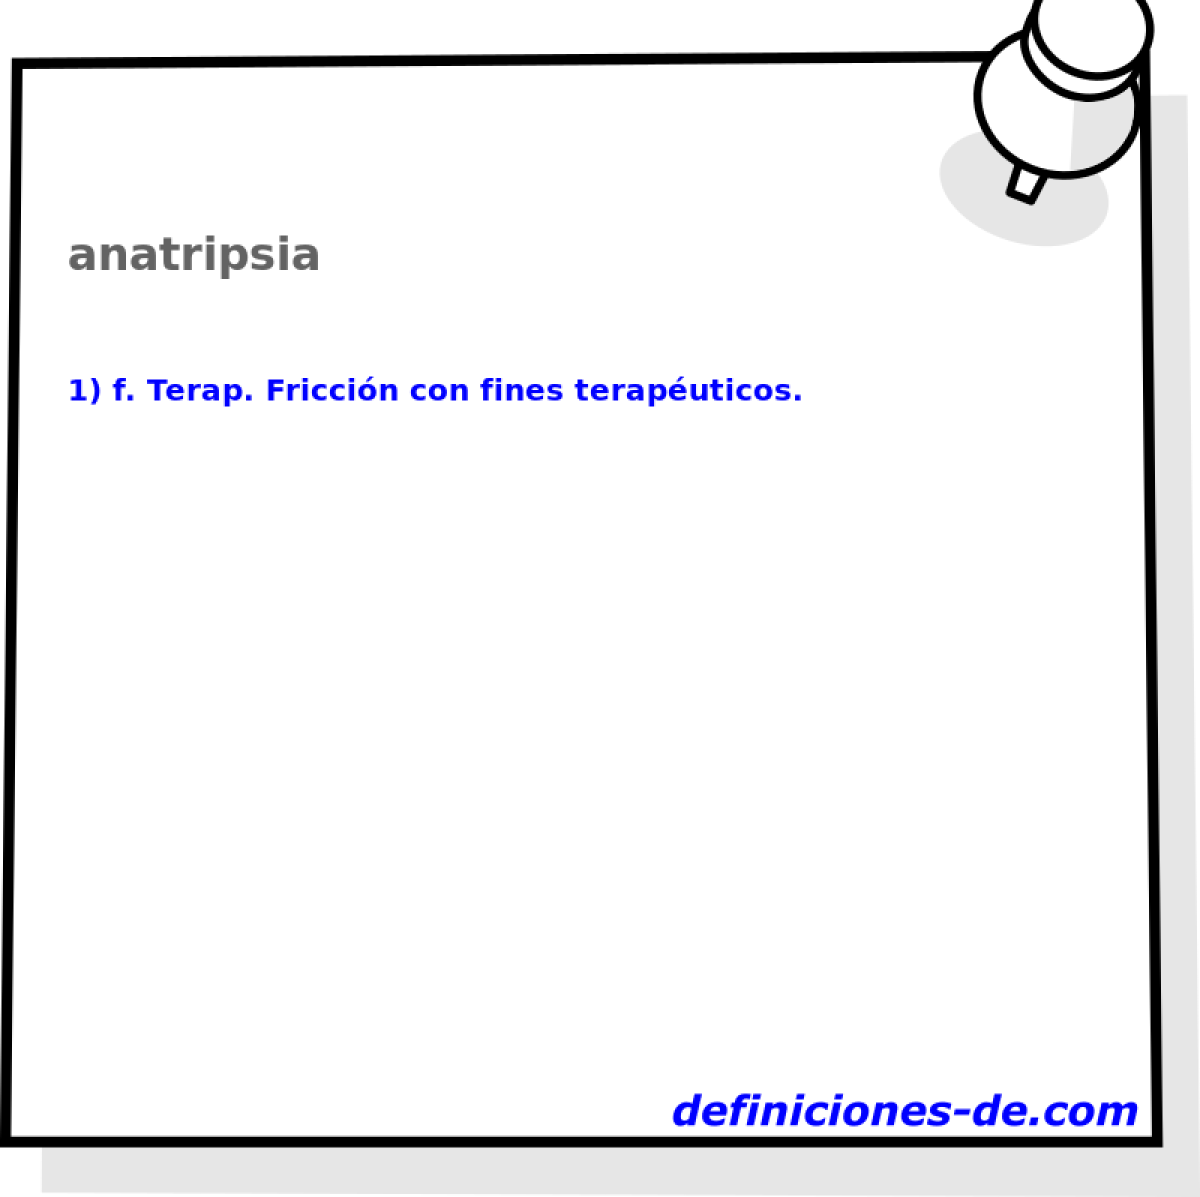 anatripsia 